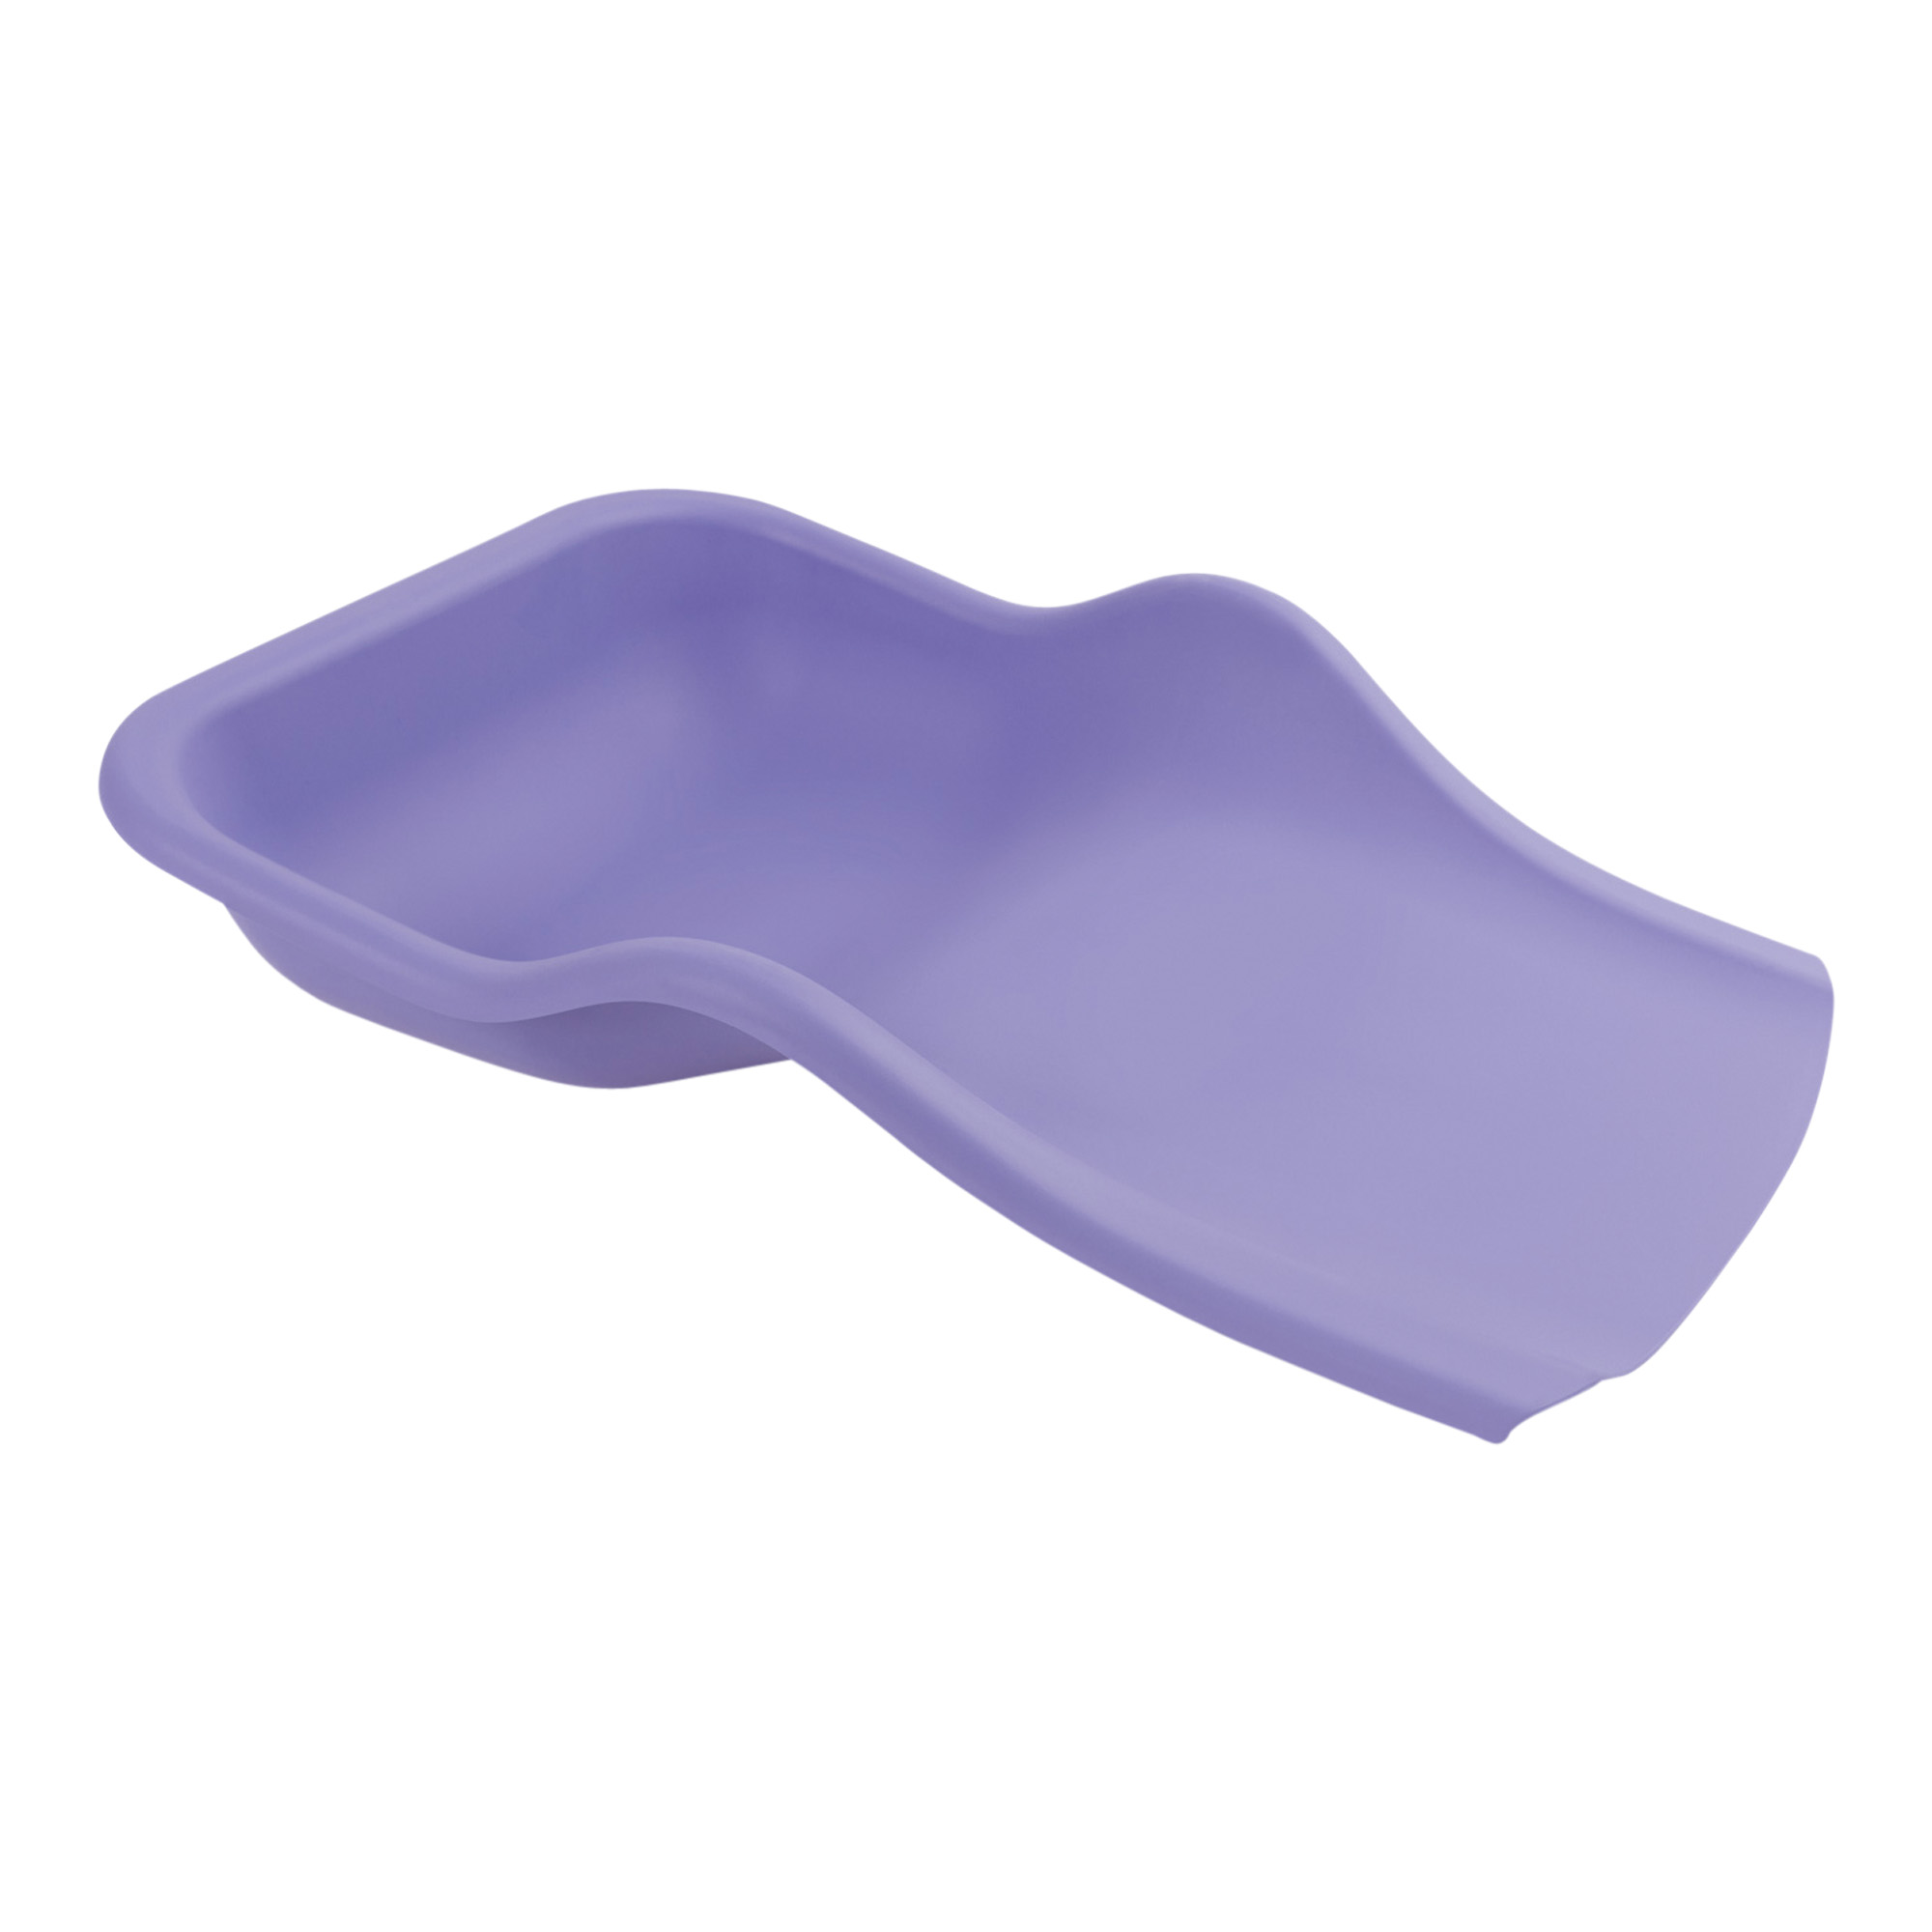 Augette de récuperation flexible pour la collecte des résidus de pédicure violet